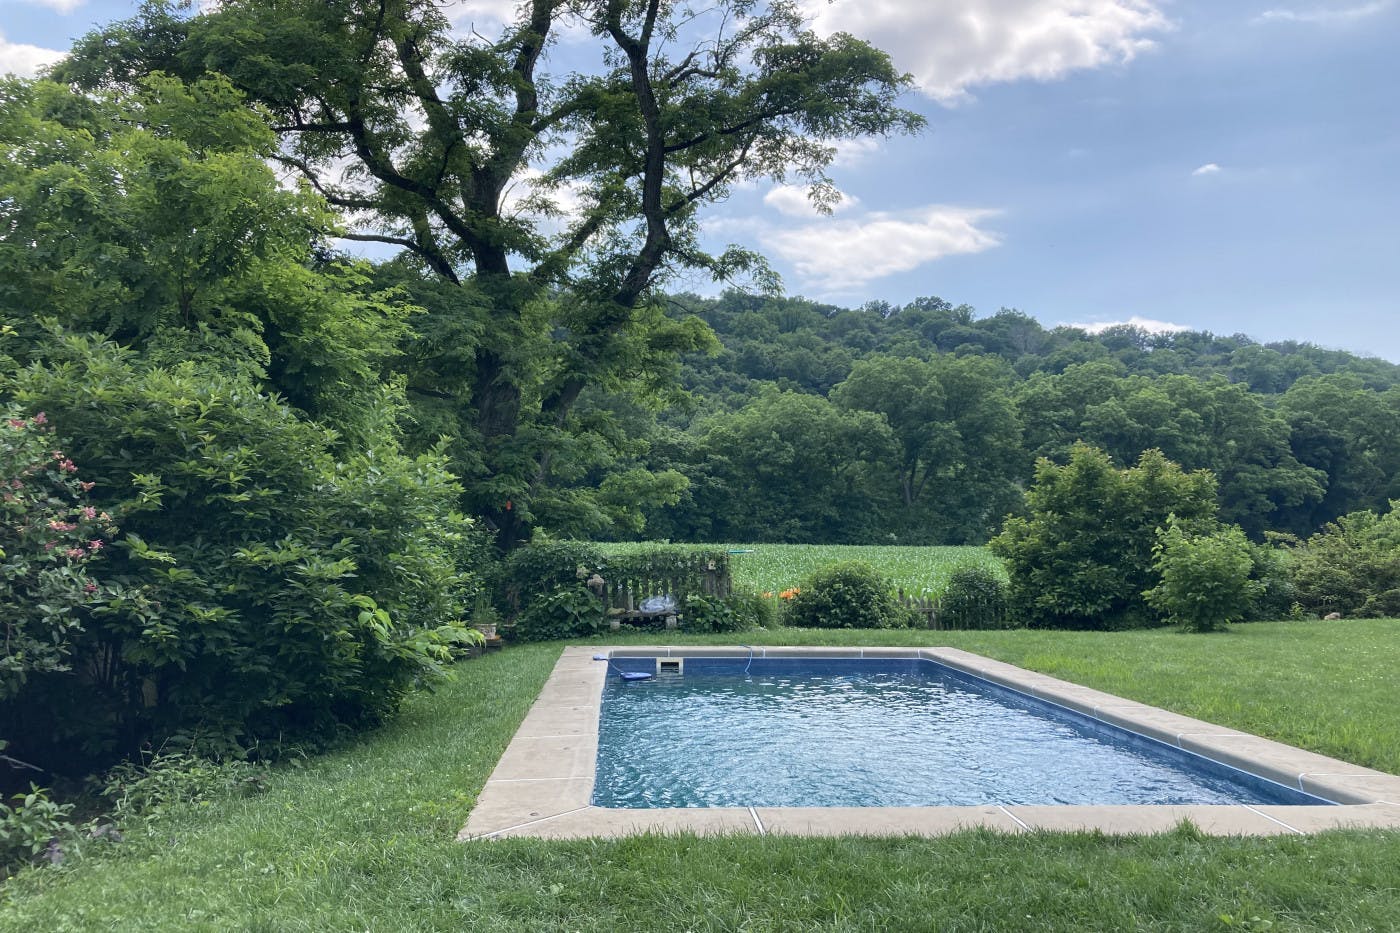 "Hidden Gem" Private Relaxing Rural Pool